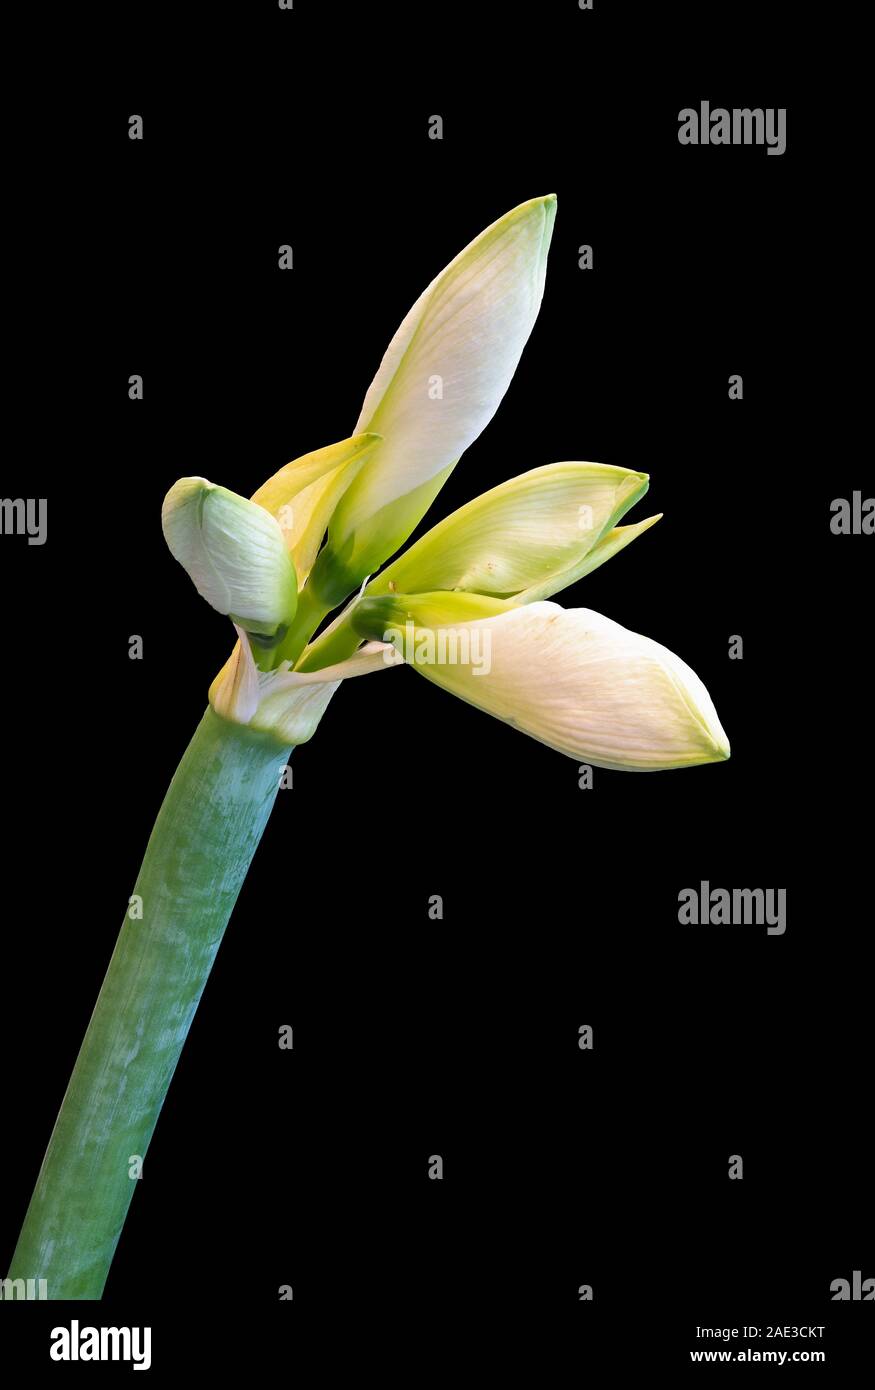 La tige de l'amaryllis blanc isolé avec quatre boutons,fond noir,fine art still life macro couleur, texture détaillée,fleurs vintage style de peinture Banque D'Images